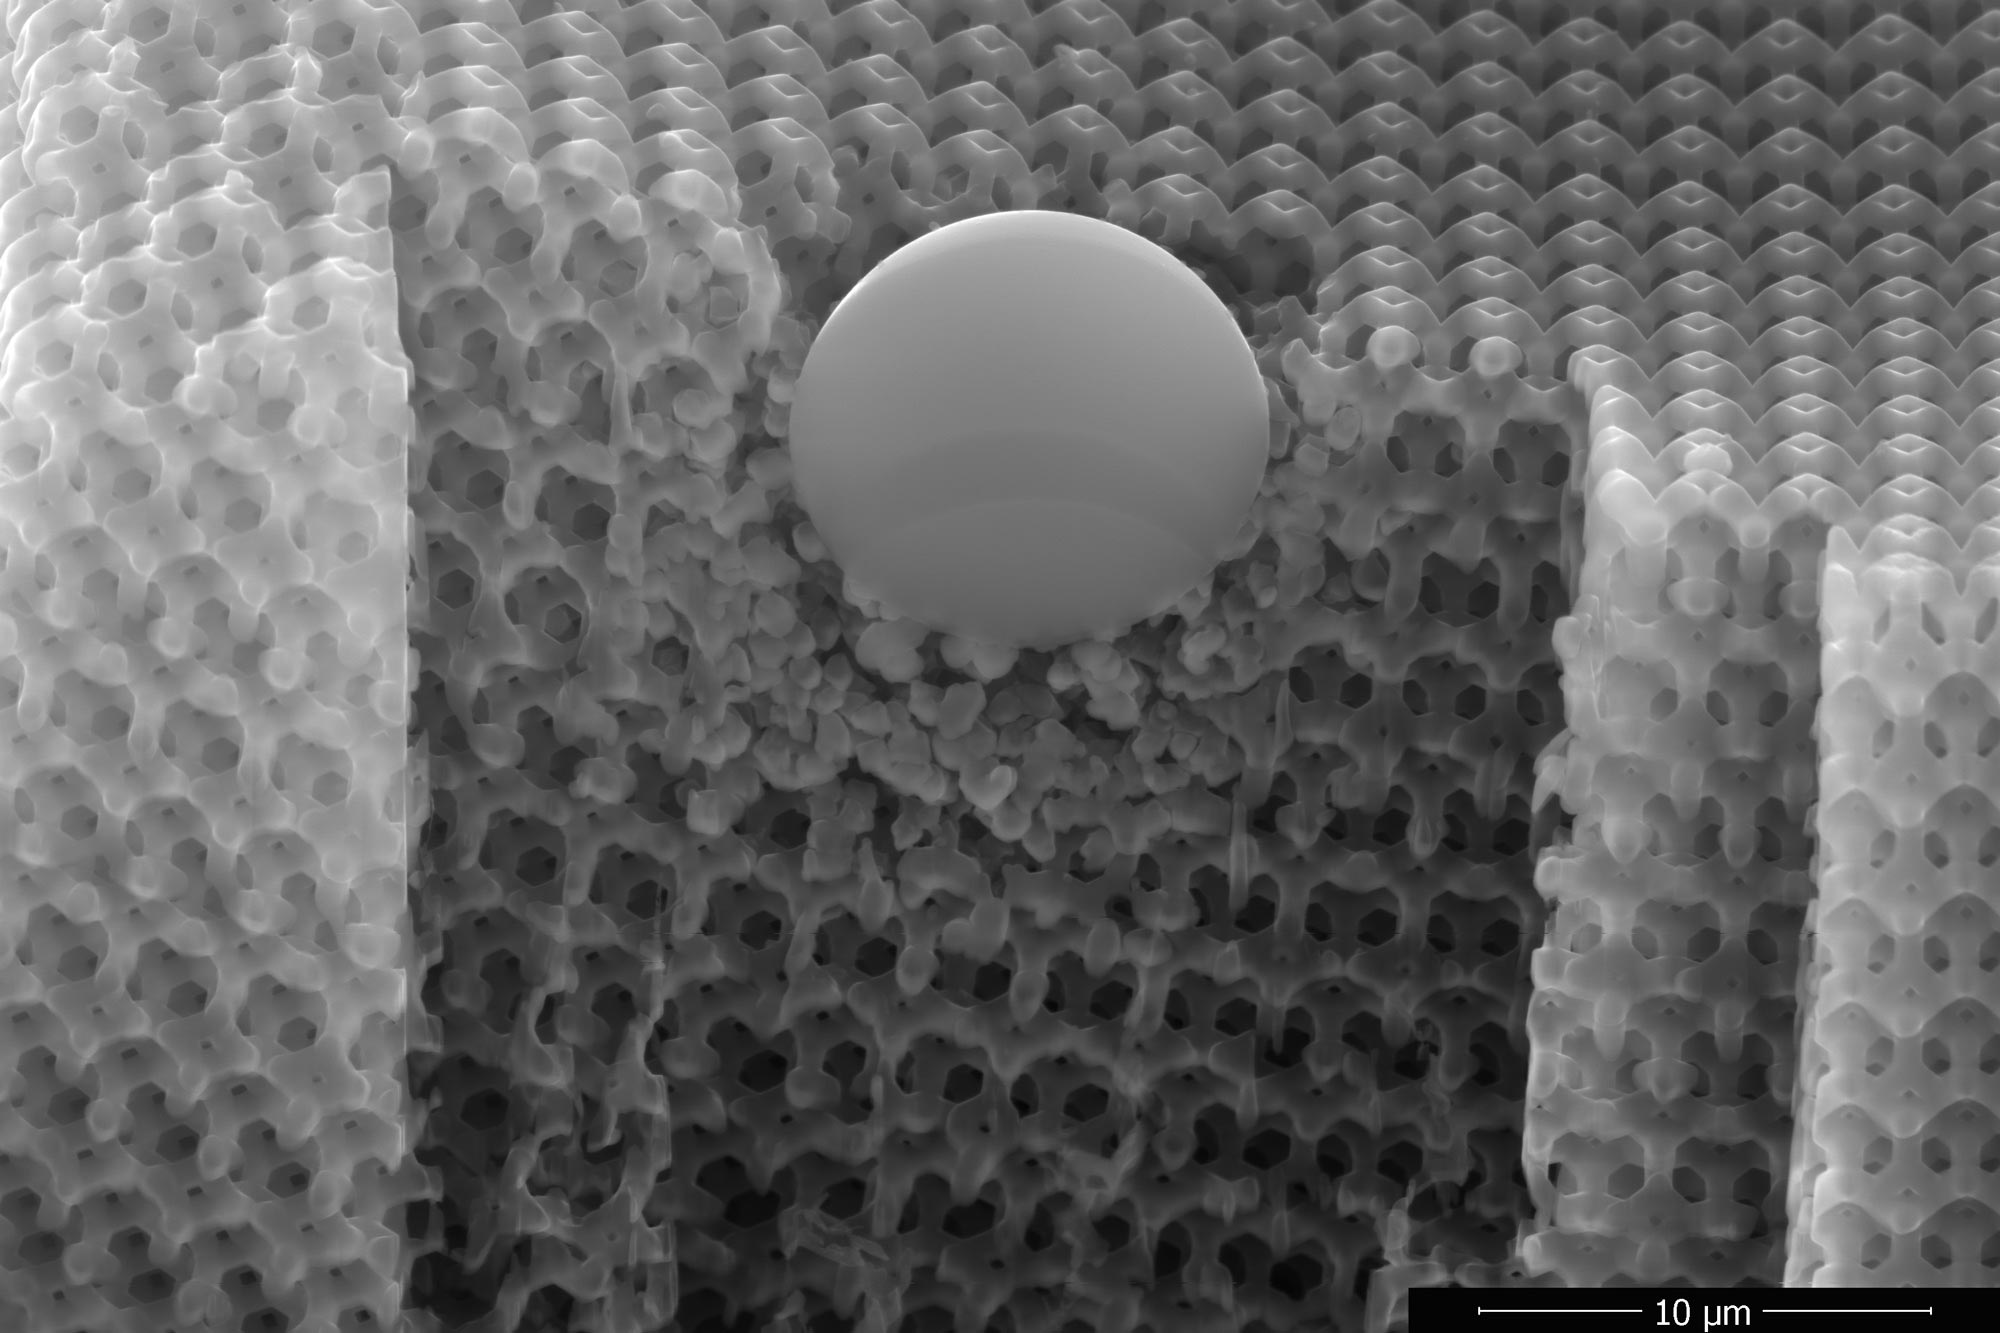 New Nanomaterial Proves Stronger Than Kevlar - ASME